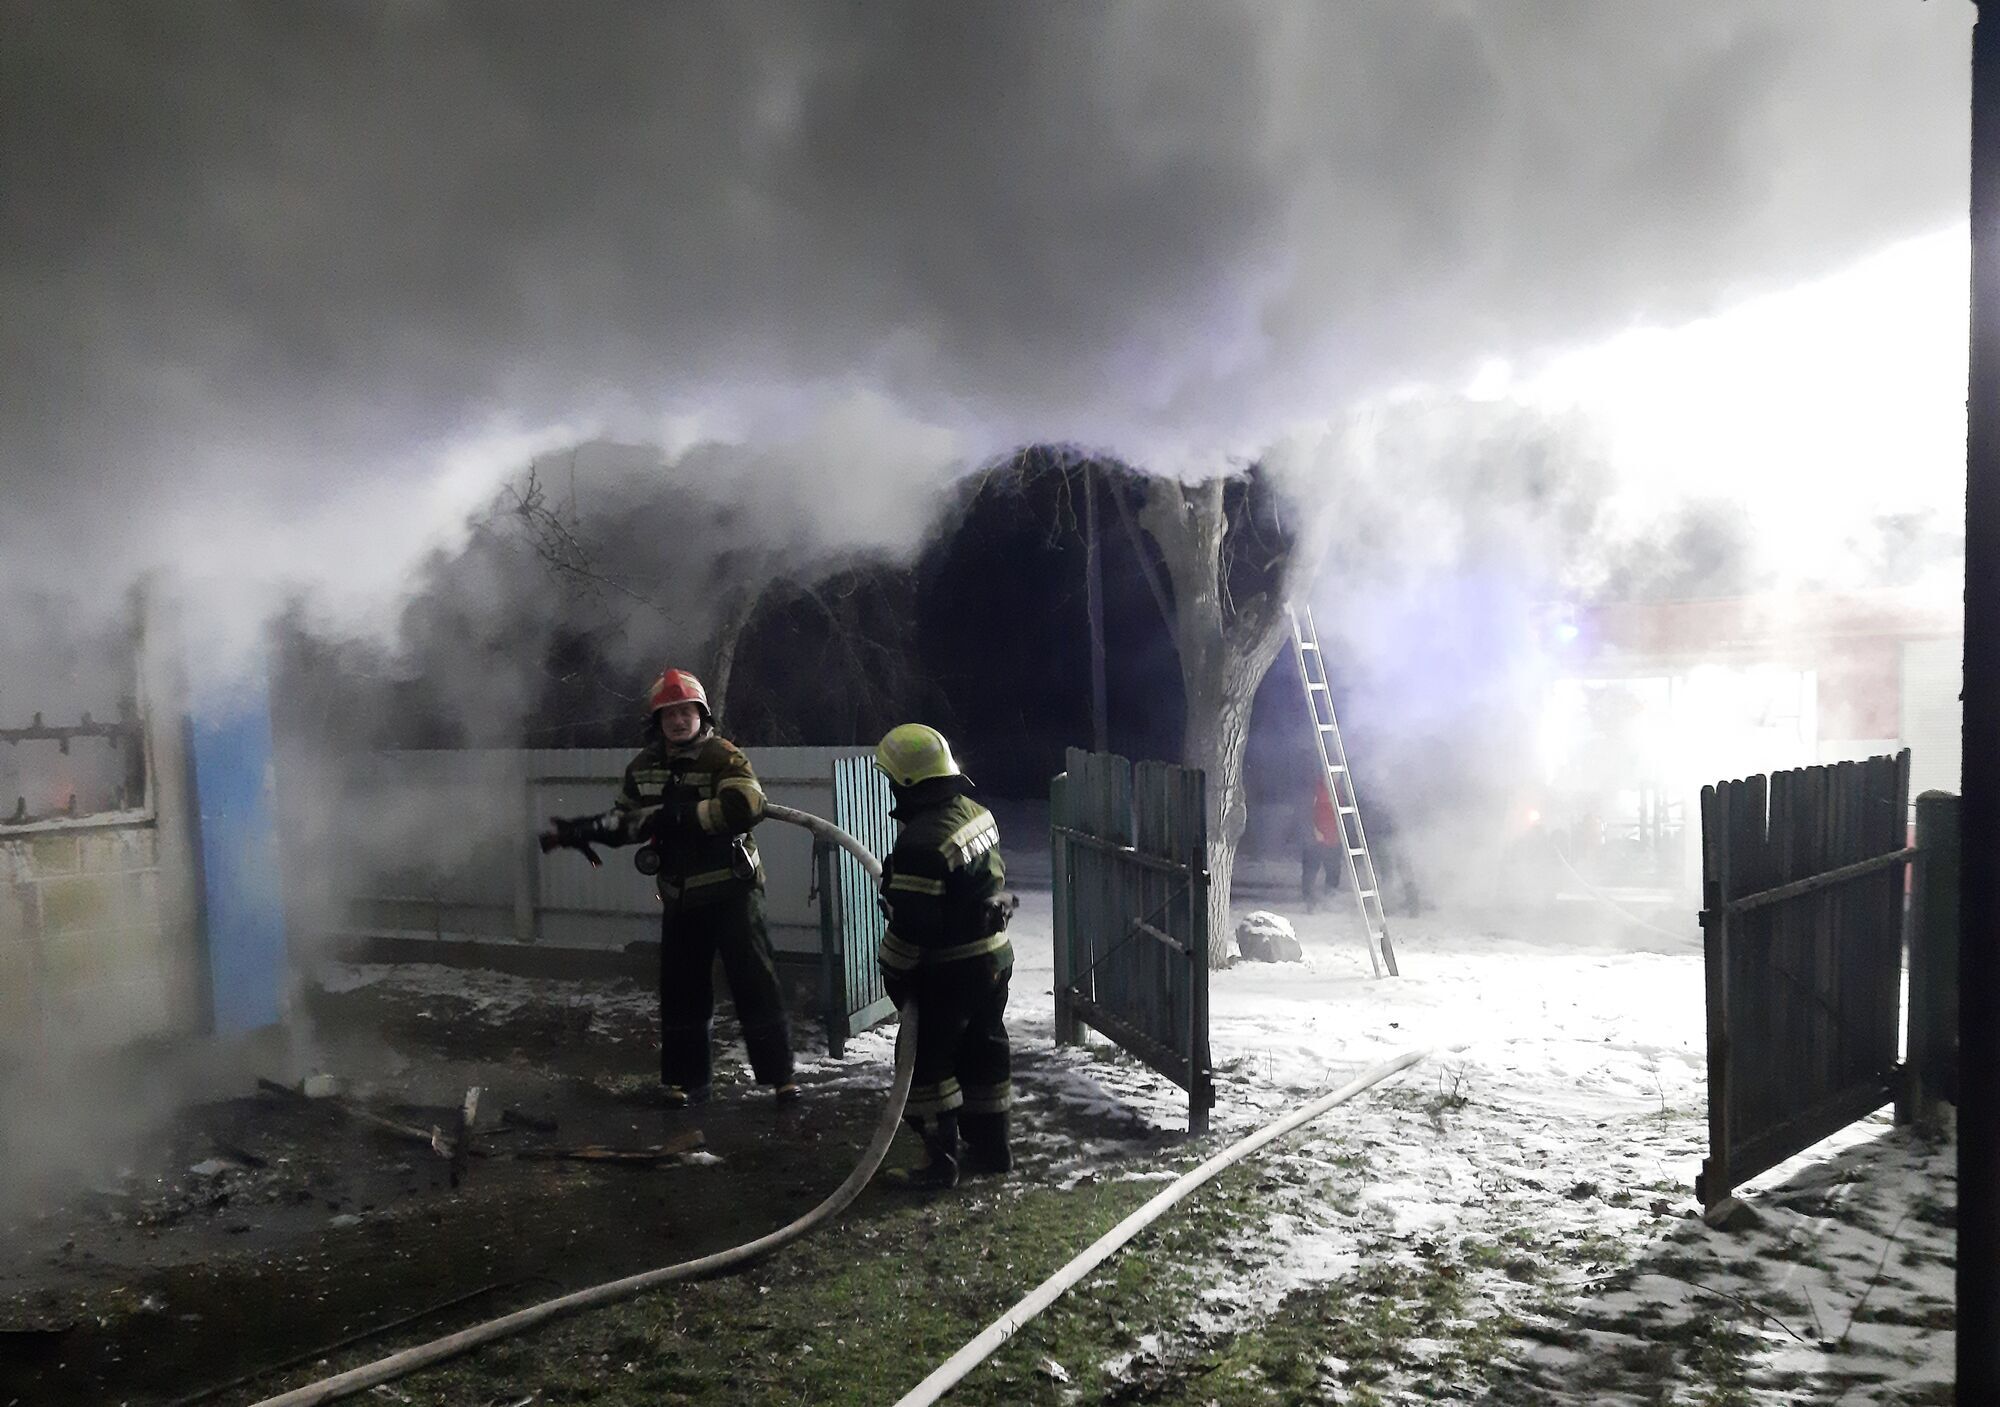 Черкаська область: минулої доби через пічне опалення у приватному житловому секторі виникло 6 пожеж